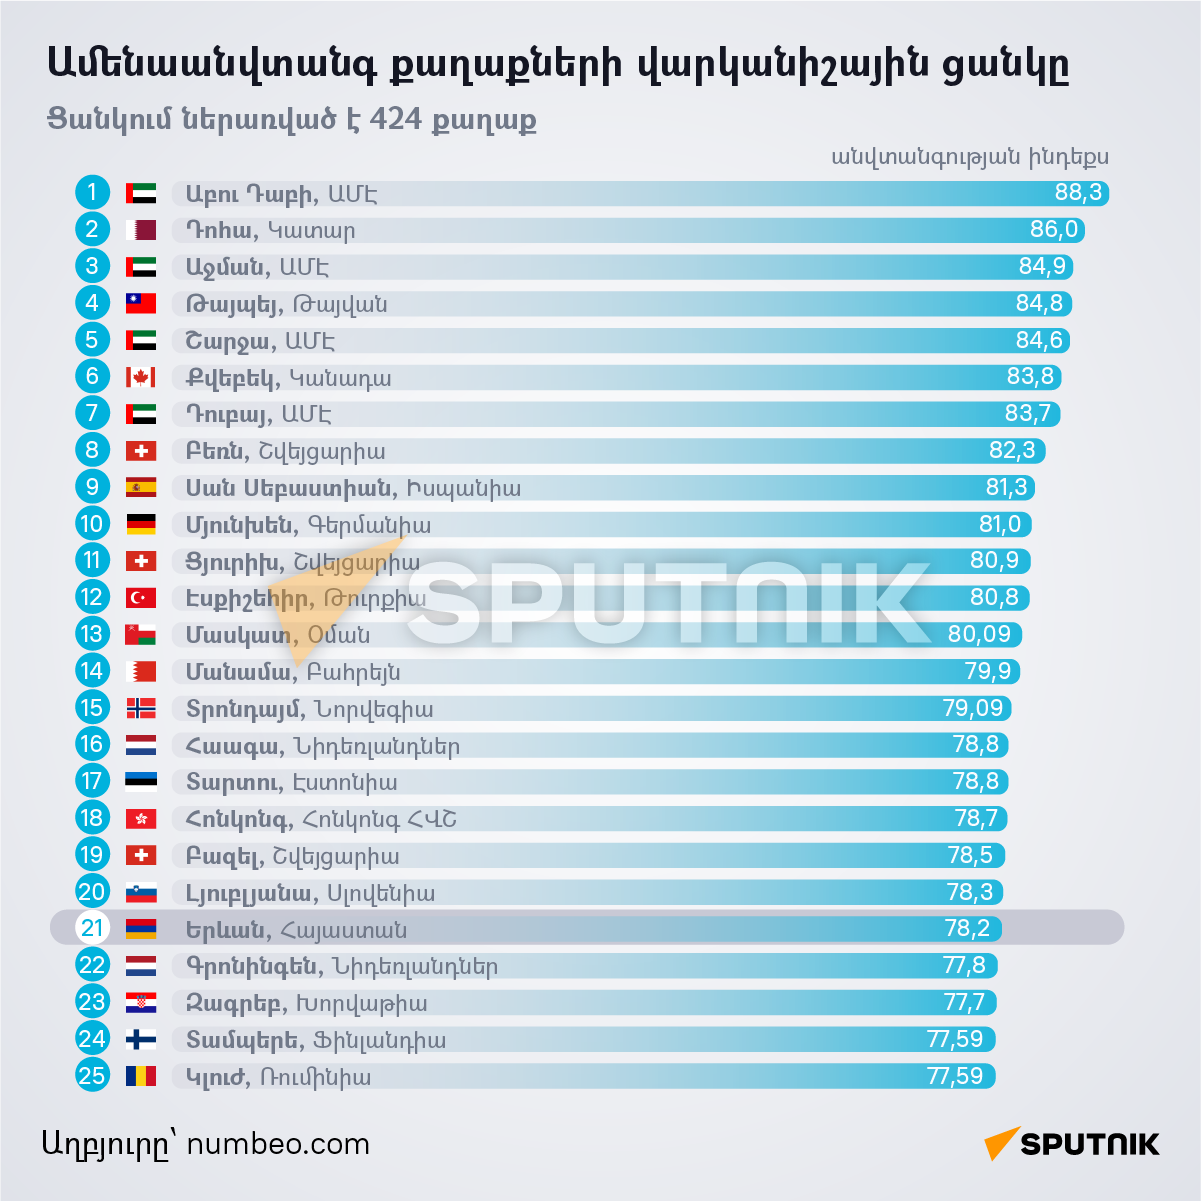 Ամենաանվտանգ քաղաքների վարկանիշային ցանկը - Sputnik Արմենիա